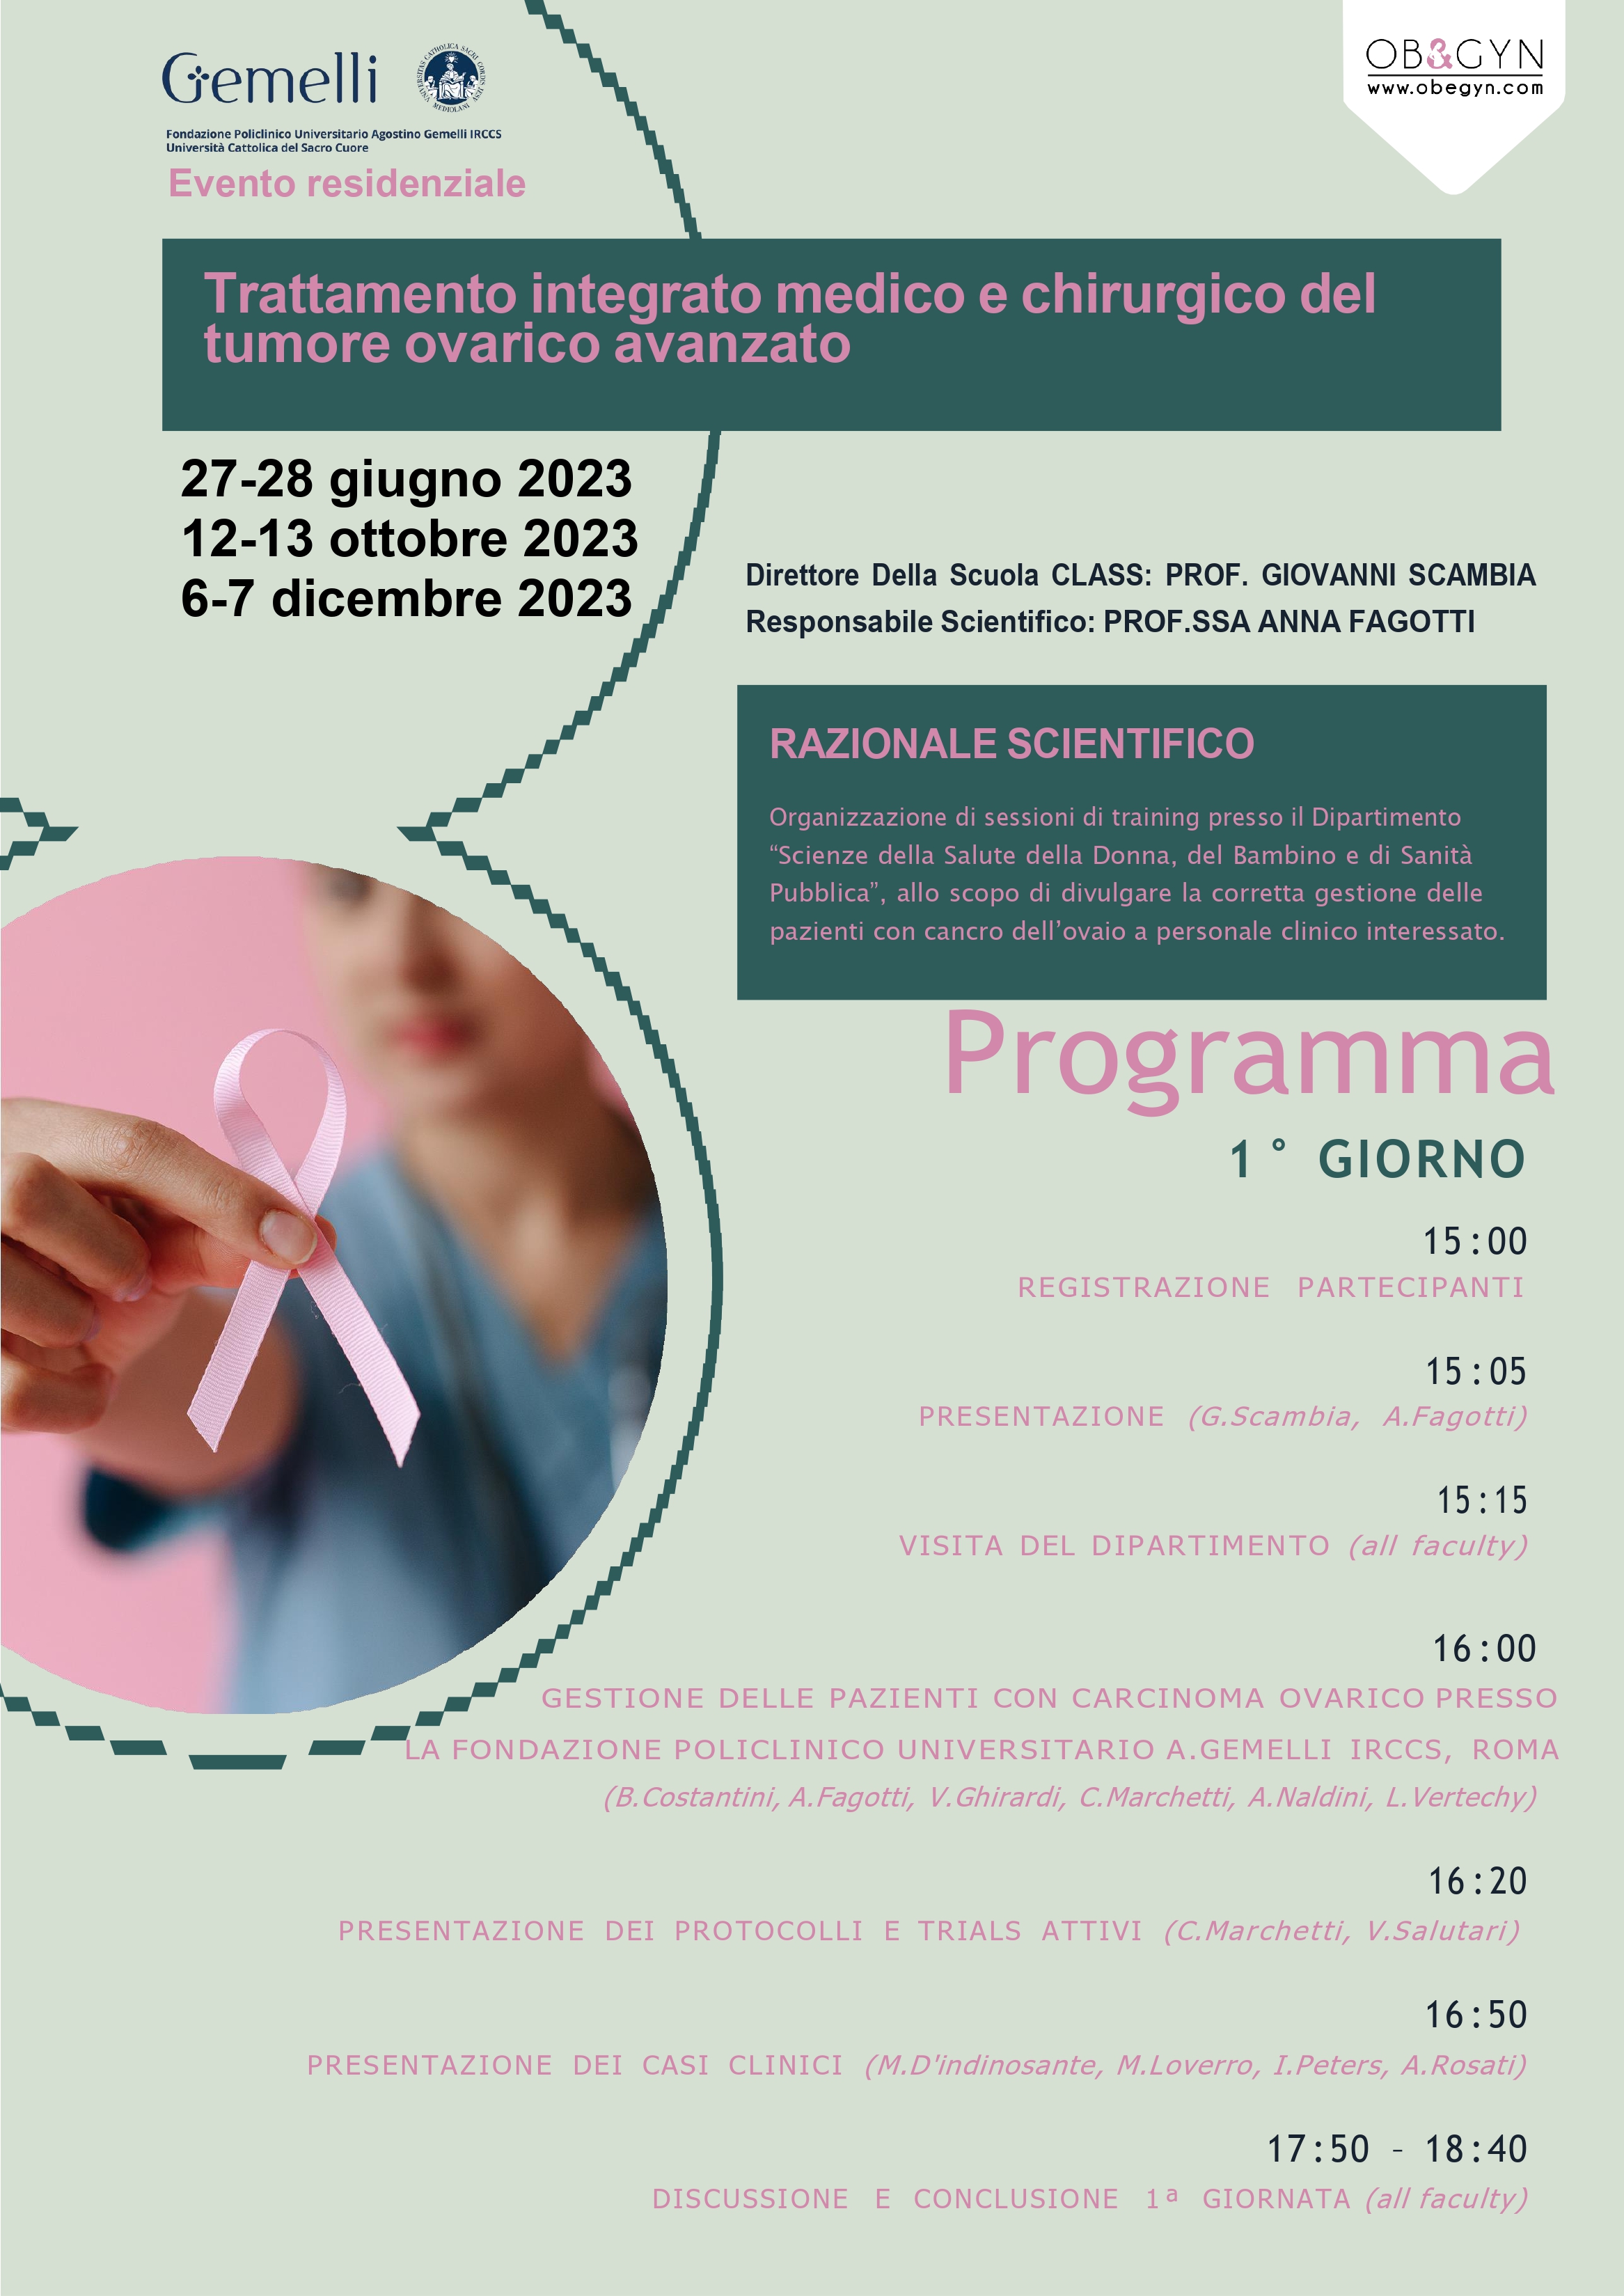 Programma Trattamento integrato medico e chirurgico del tumore ovarico avanzato - ottobre 2023